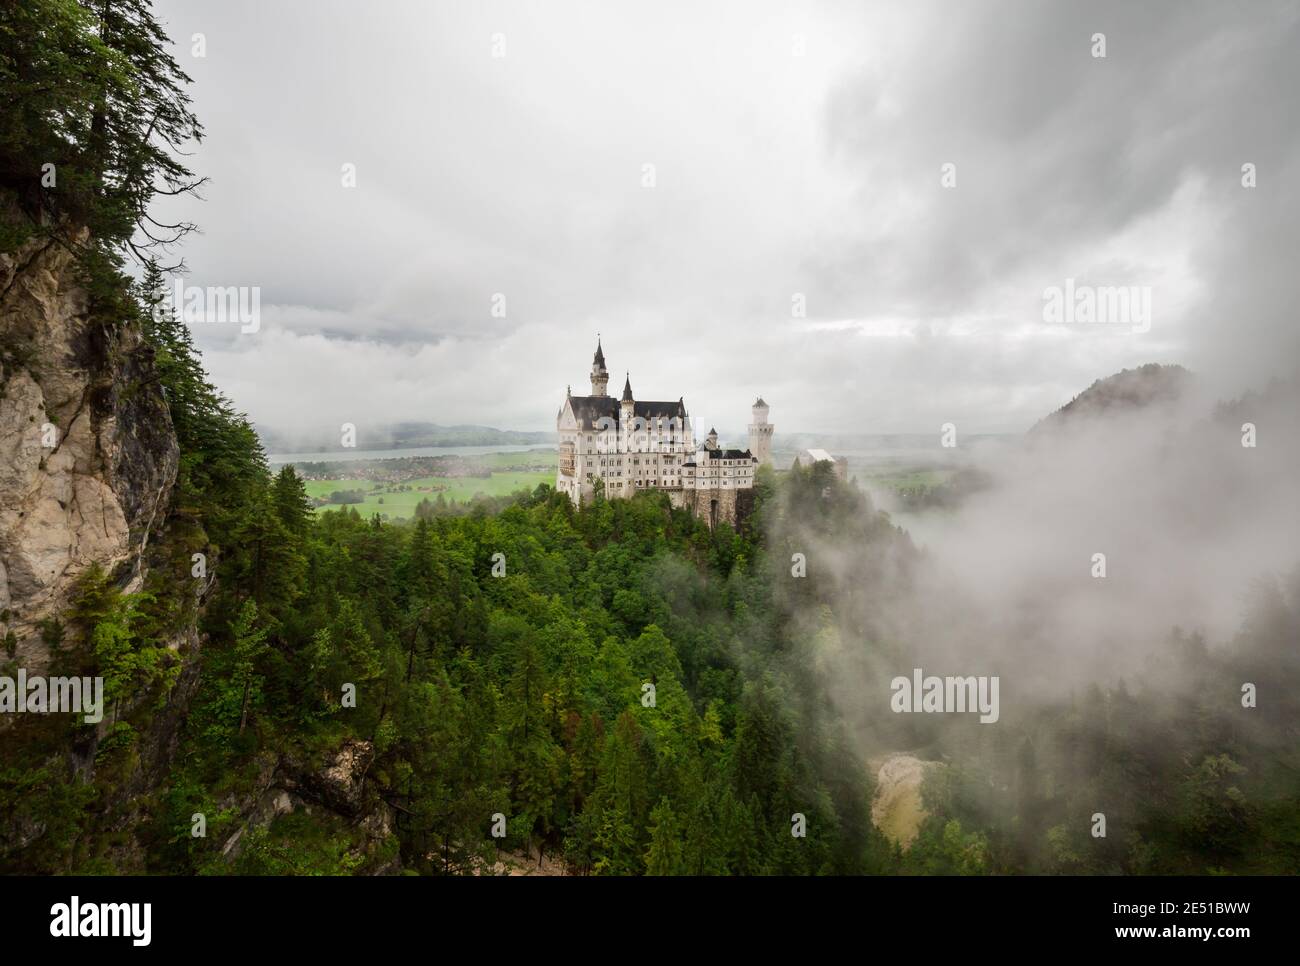 Ampio angolo di vista di un paesaggio tedesco con un antico castello circondato da basse nuvole, contro un cielo scuro nuvoloso Foto Stock